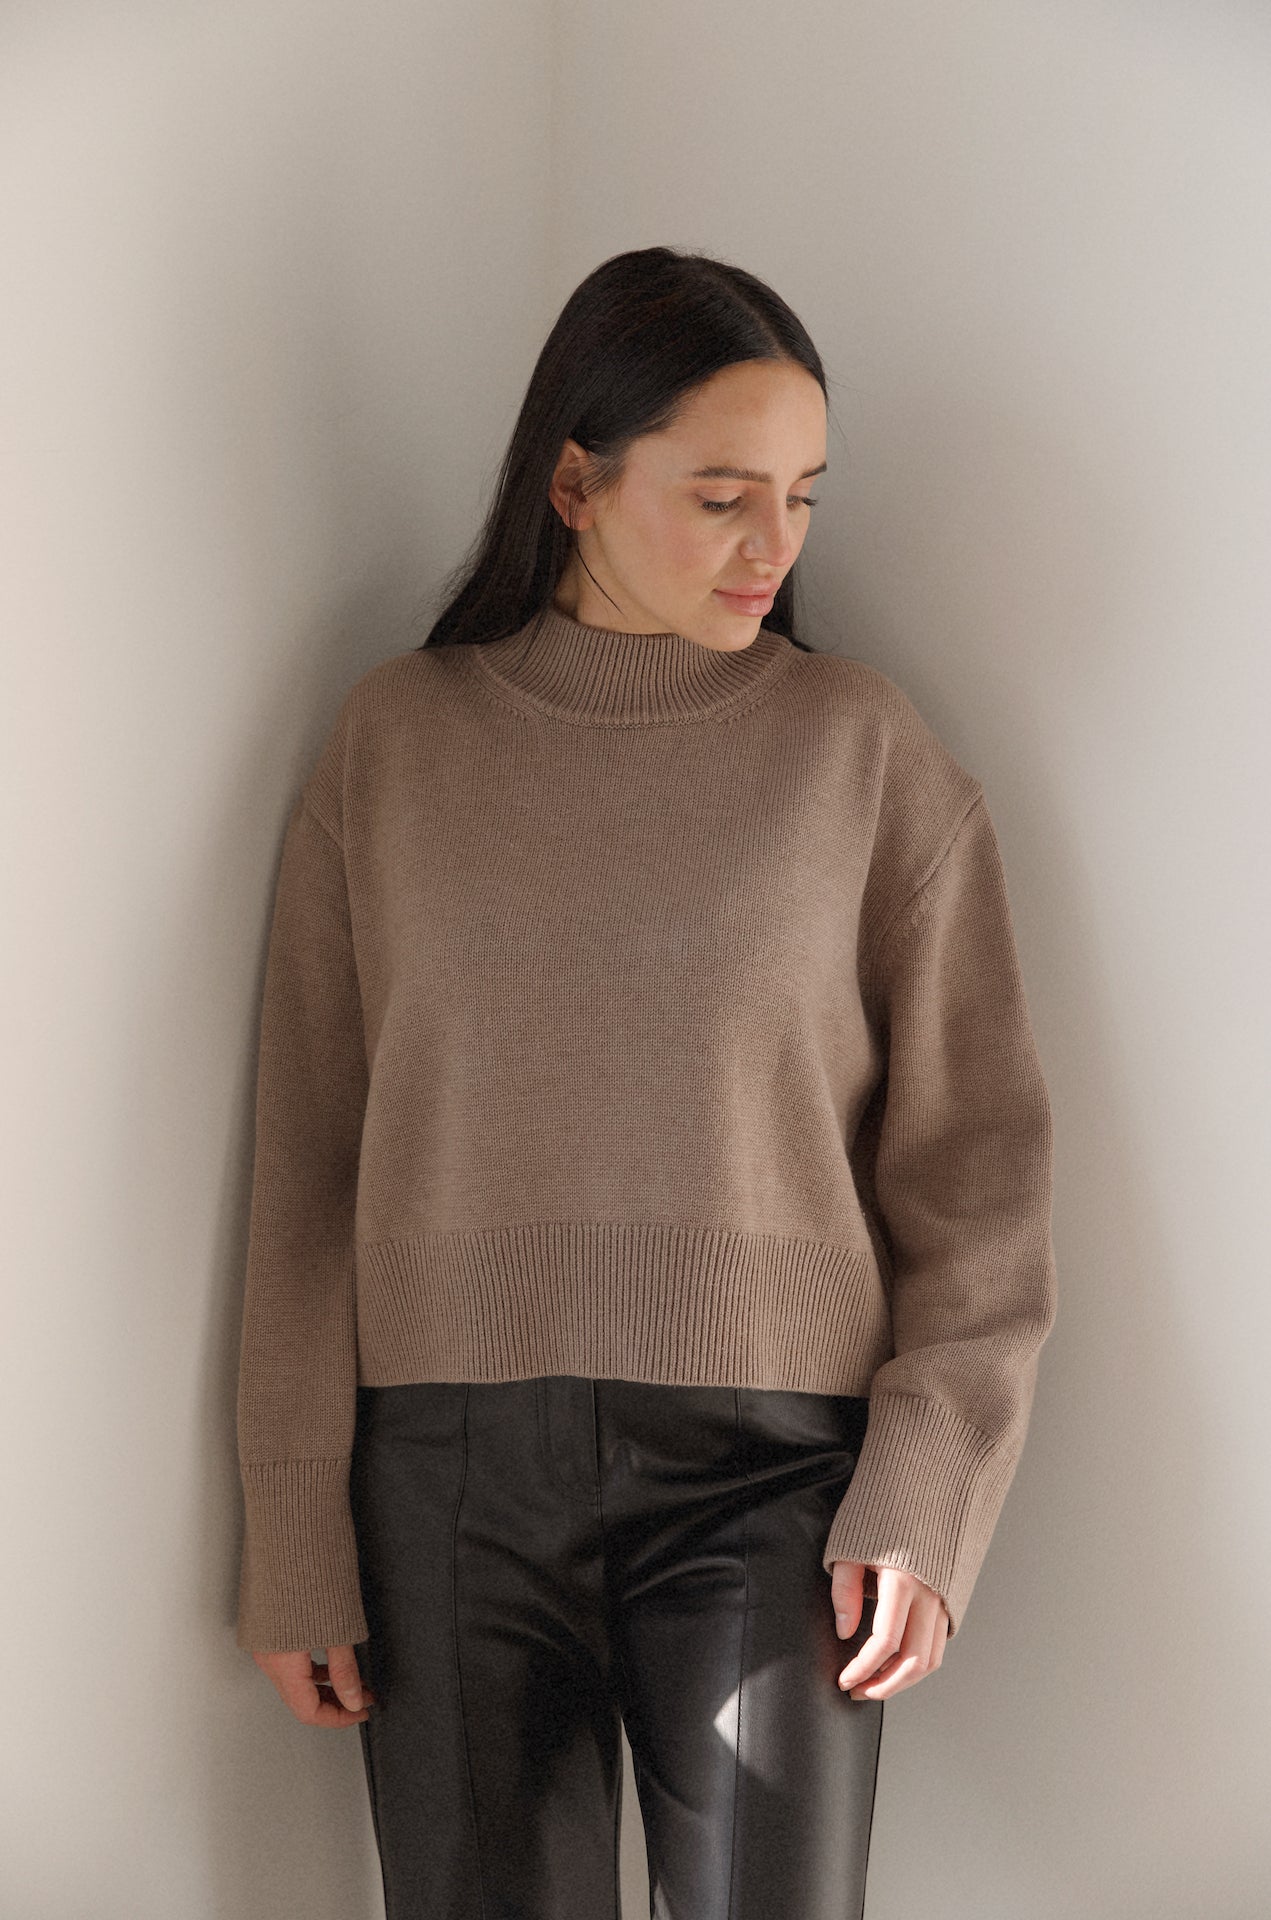 mocha brown knit sweater